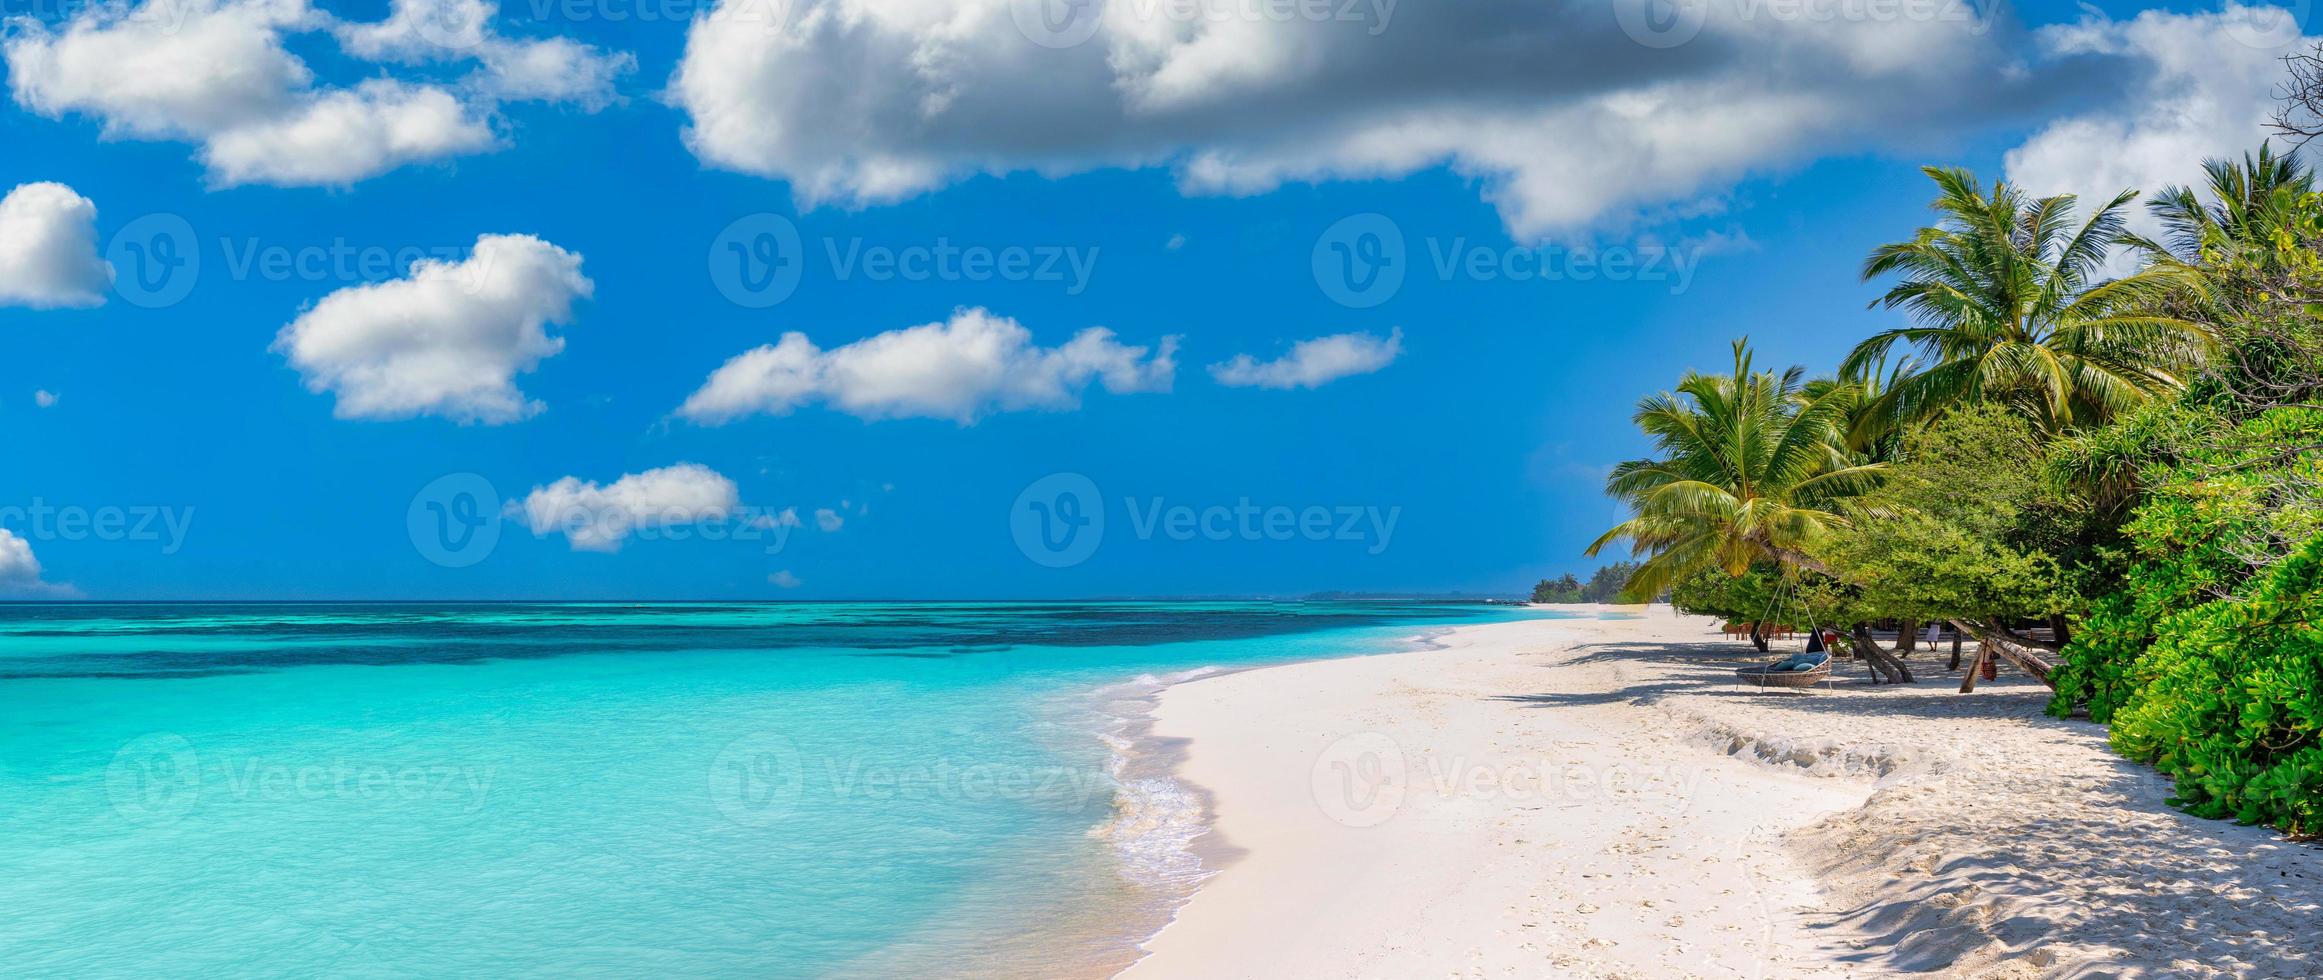 praia da ilha paradisíaca. paisagem tropical de verão cênico, céu de areia do mar com palmeiras. destino de férias de viagens de luxo. paisagem de praia exótica. natureza incrível, relaxe, modelo de natureza de liberdade foto